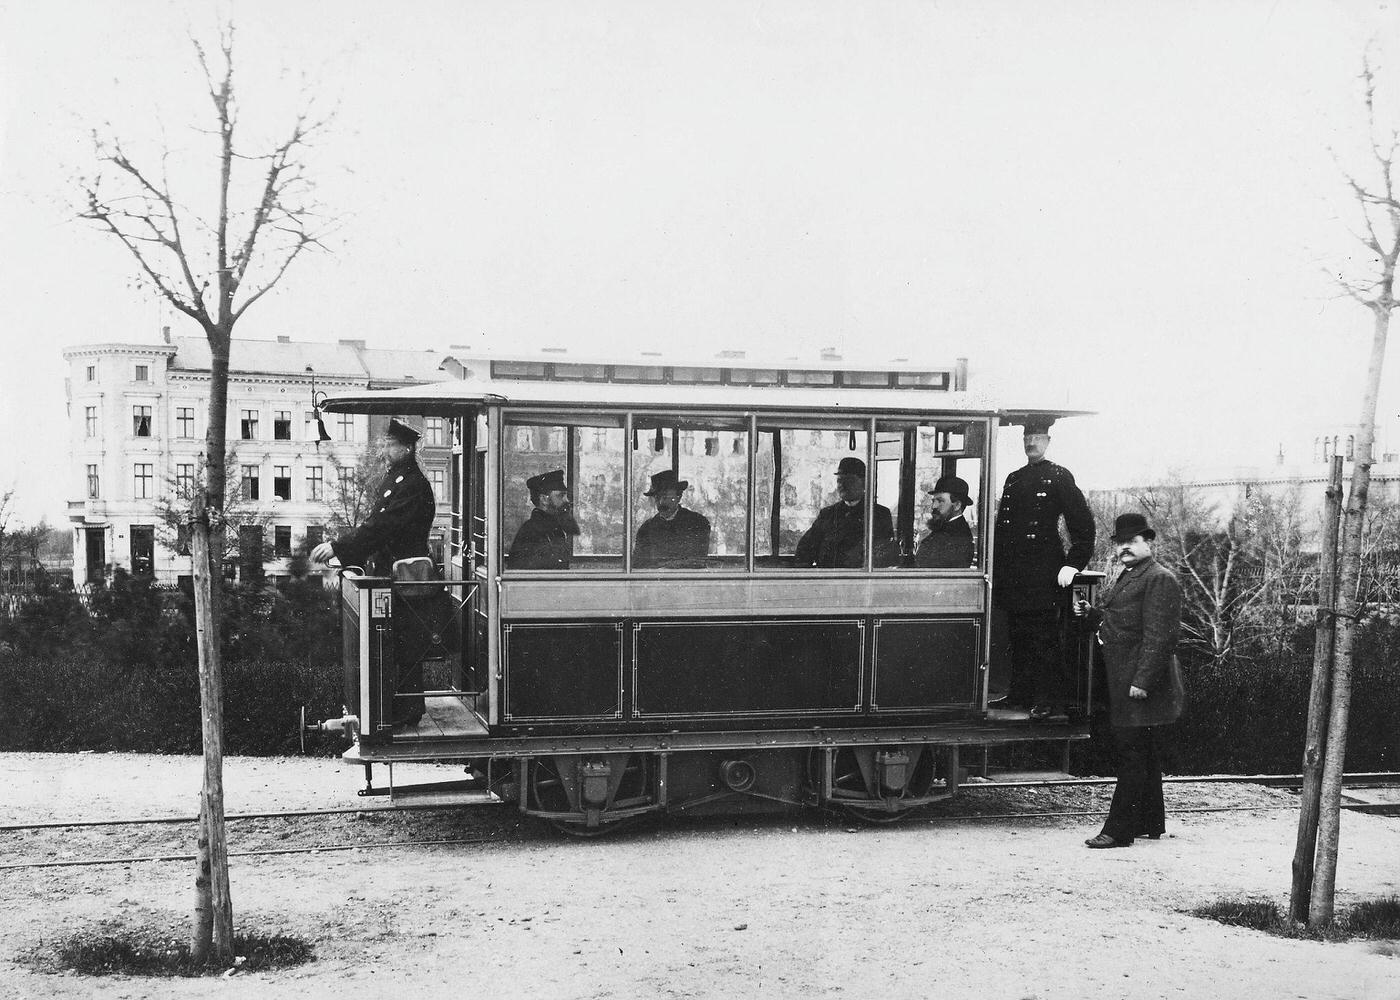 First electric tram, Siemens & Halske, Lichterfelde, Berlin, 1881.